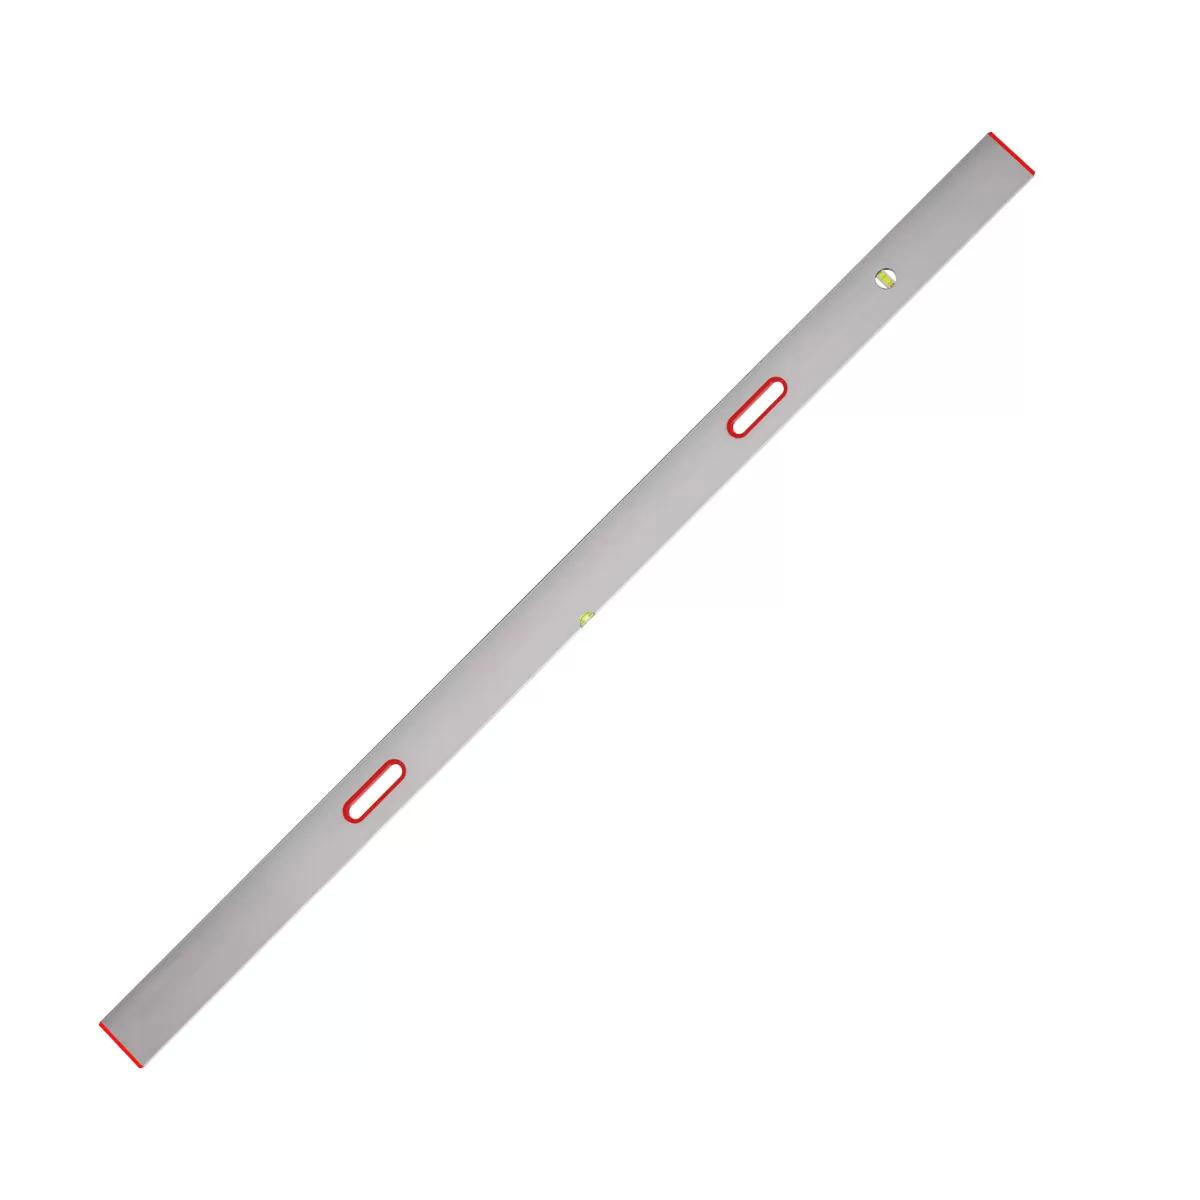 New type aluminium bar 2 axis, 8 ft / 2.5m 